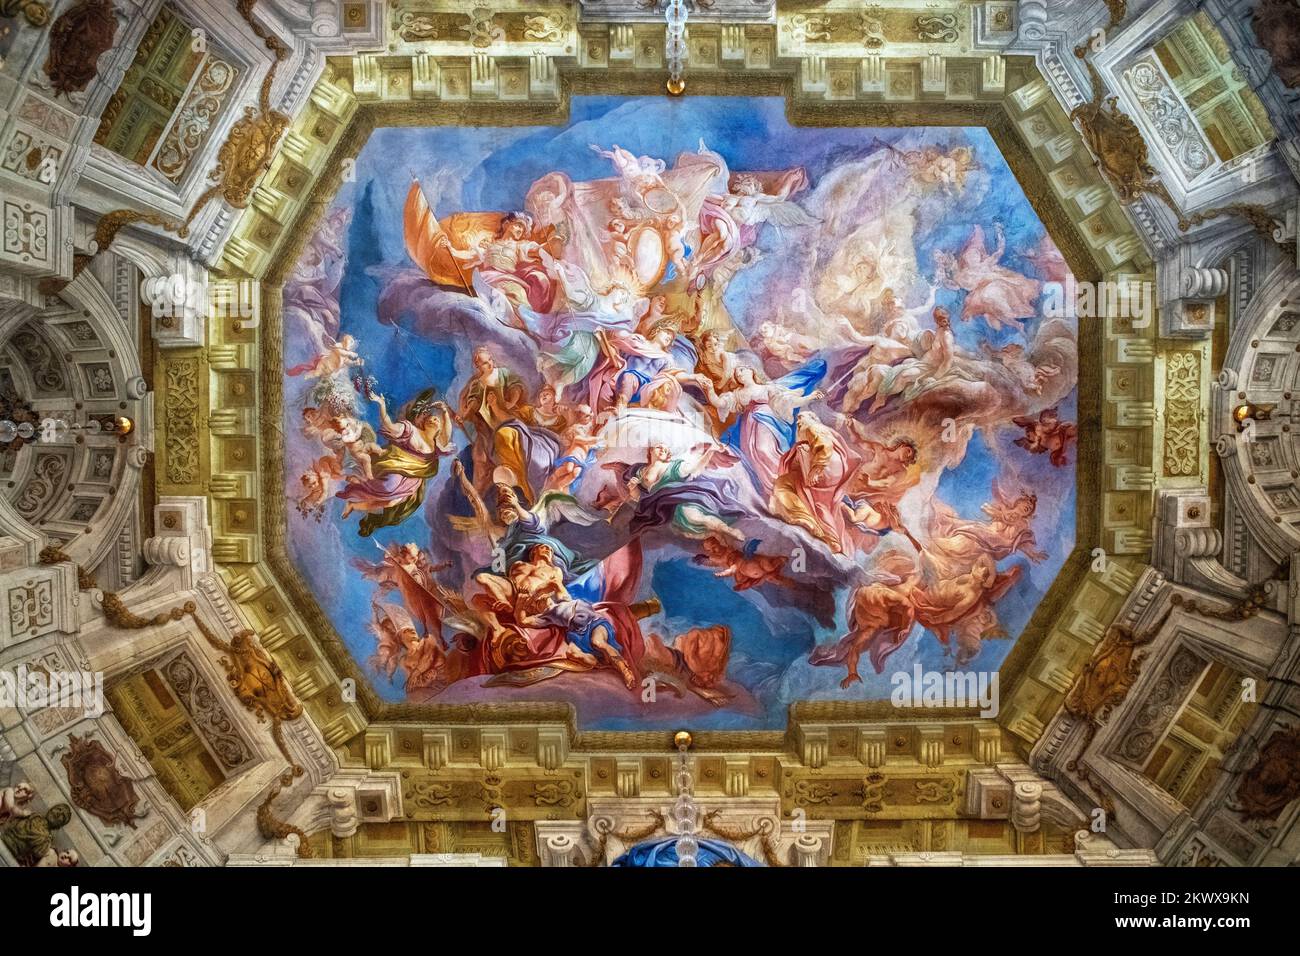 Techo interior Interior del palacio y museo Schloss Belvedere, Viena, Austria. Príncipe Eugenio como Apolo nuevo y líder de las Musas - Marble Hall Foto de stock